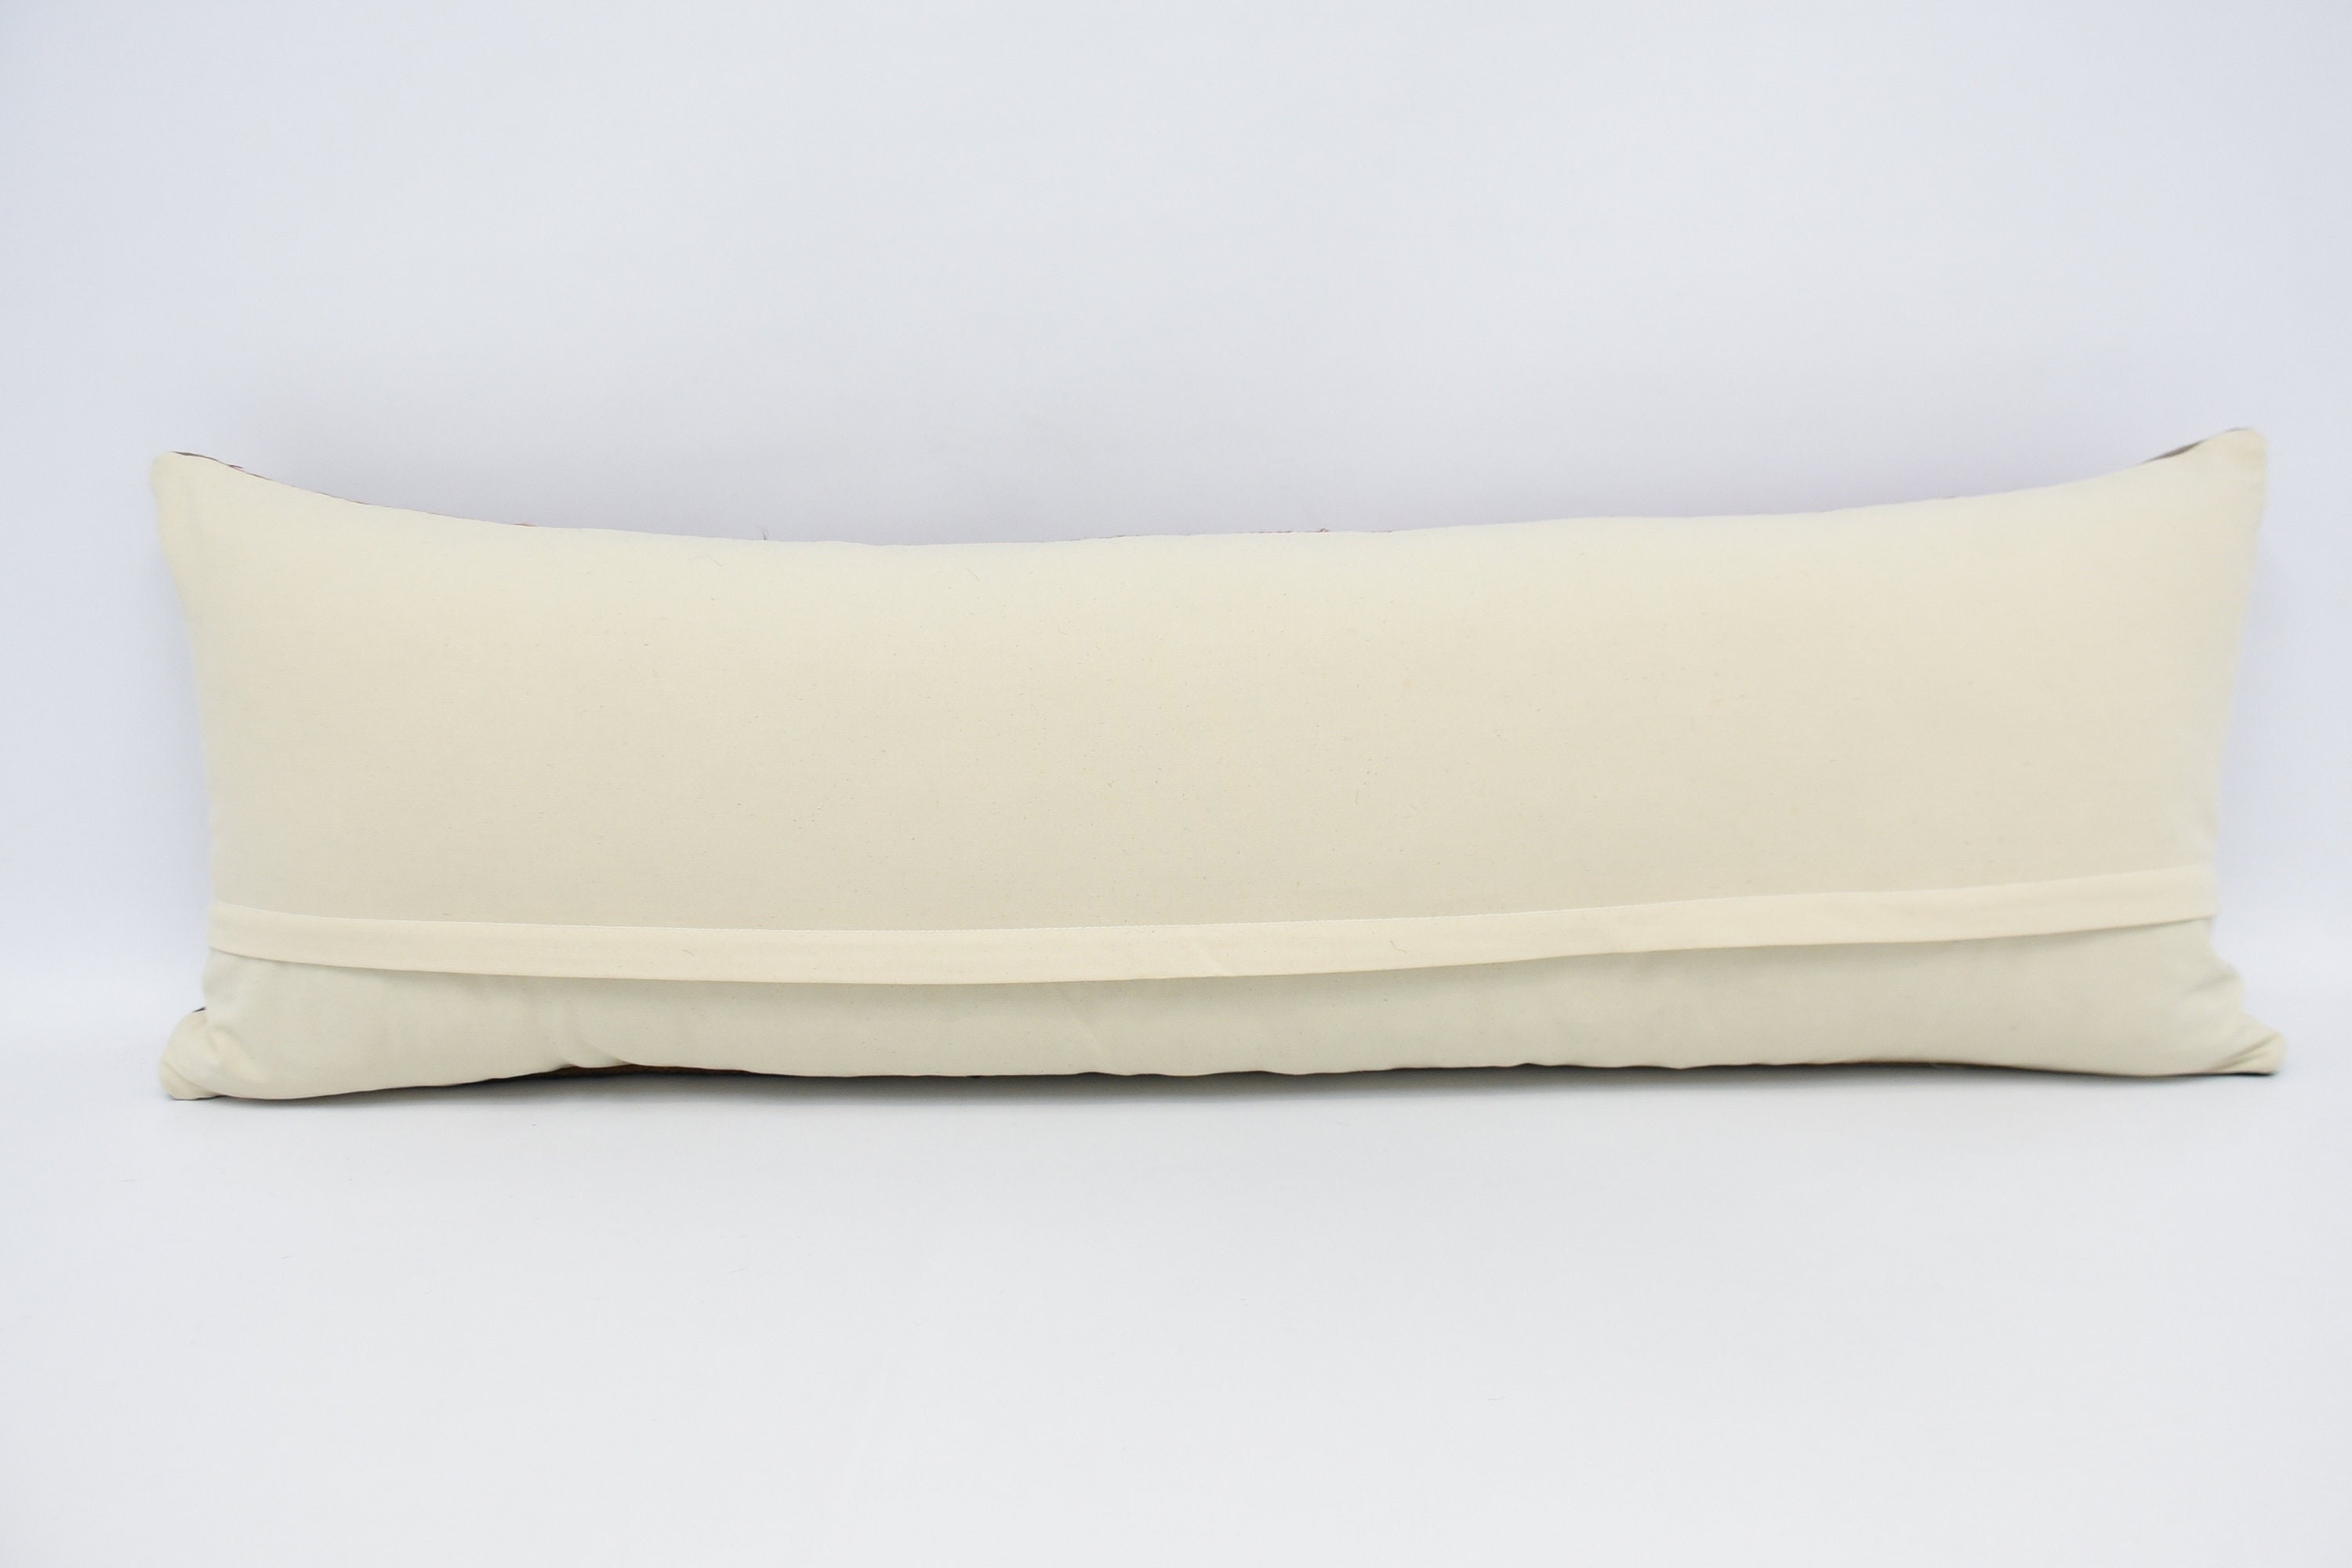 Pet Cushion Cover, Home Decor Pillow, Accent Throw Cushion Case, Kilim Pillow, 16"x48" Brown Pillow Sham, Handmade Kilim Cushion